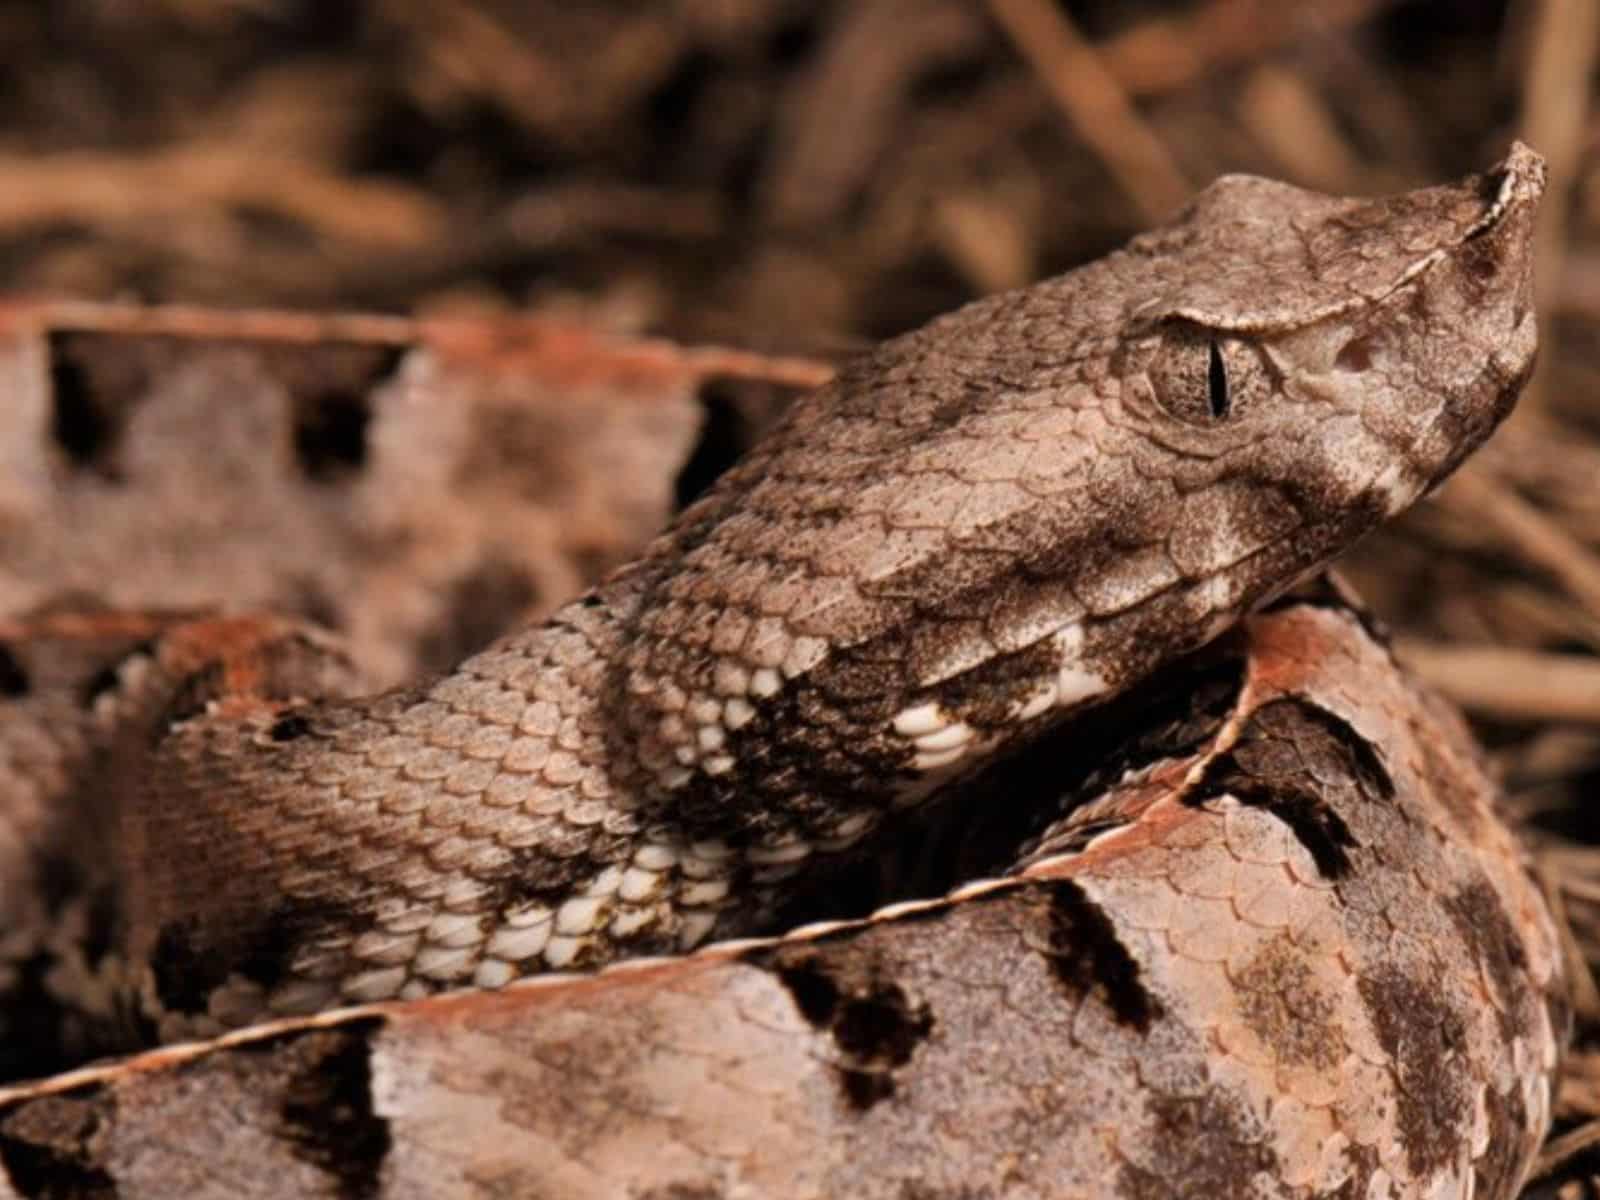 Un hombre murió por una picadura de serpiente en Petare